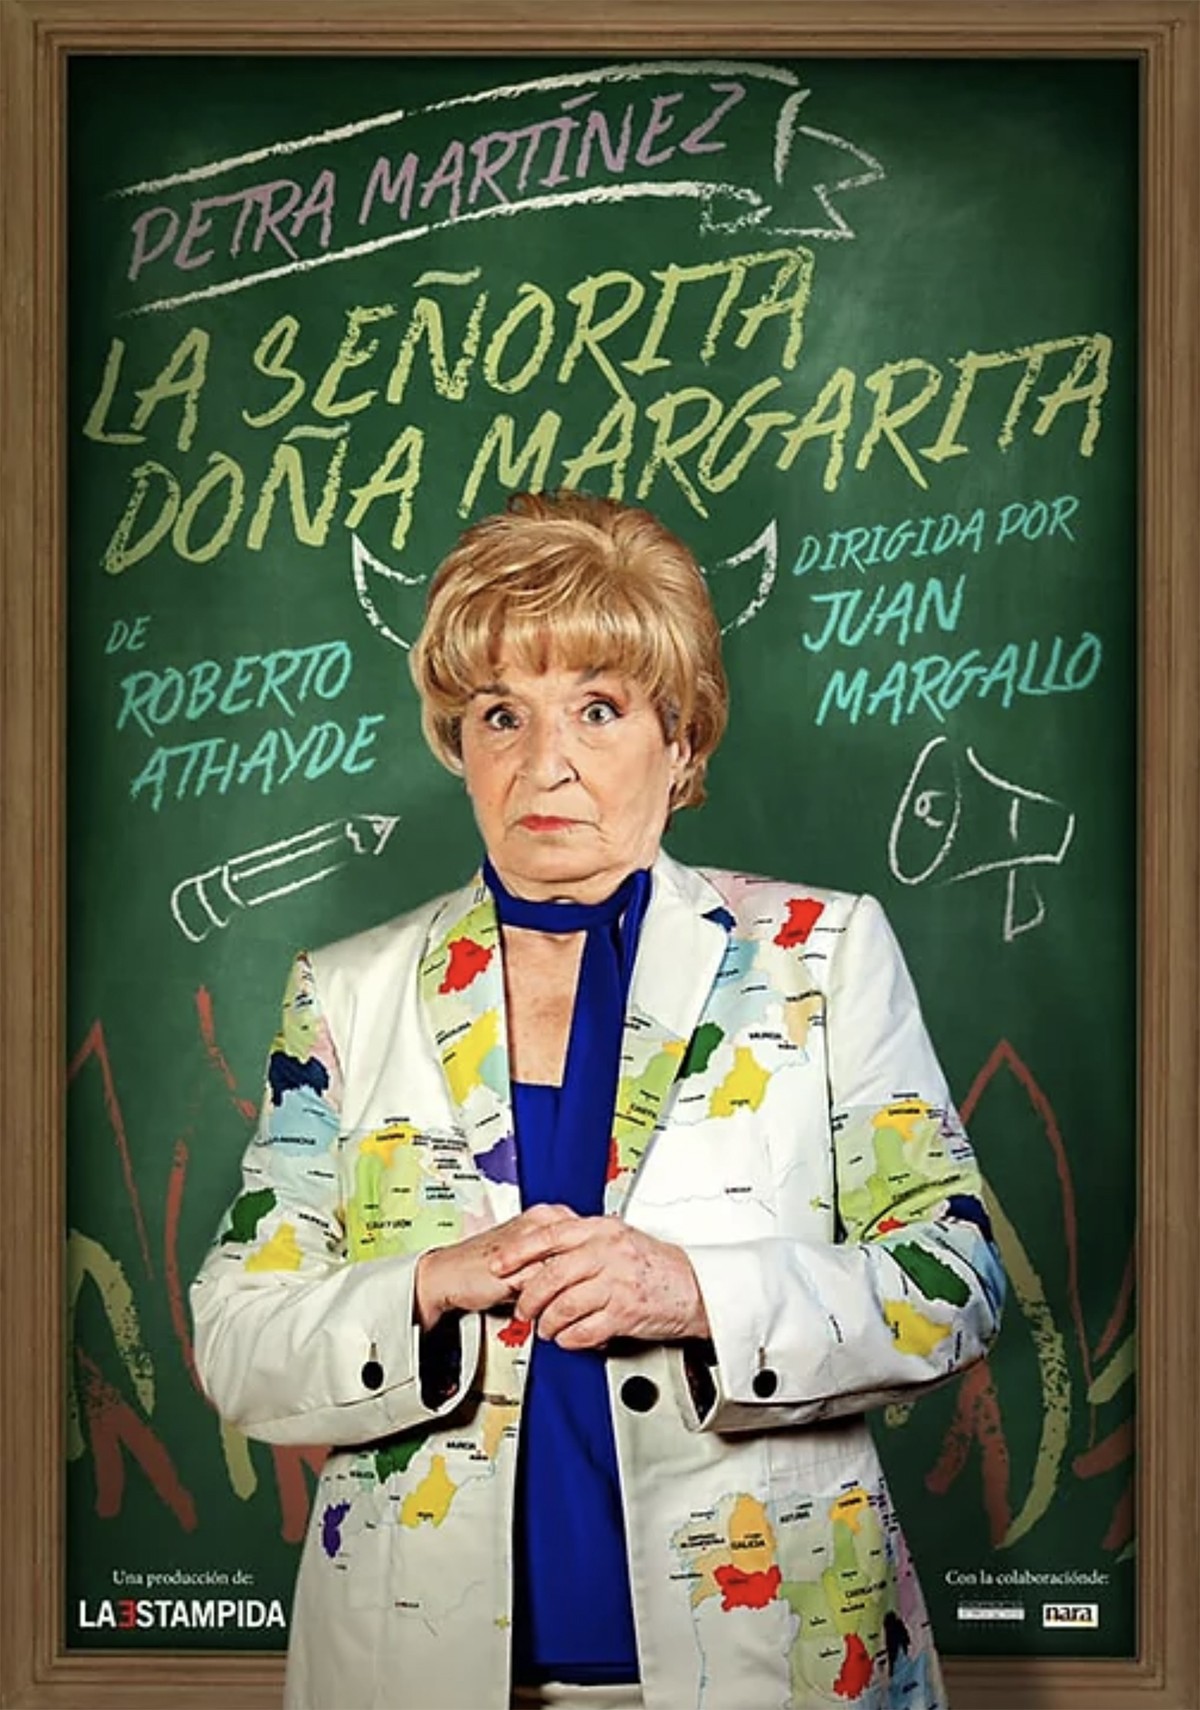 Petra Martínez protagoniza “LA SEÑORITA DOÑA MARGARITA”